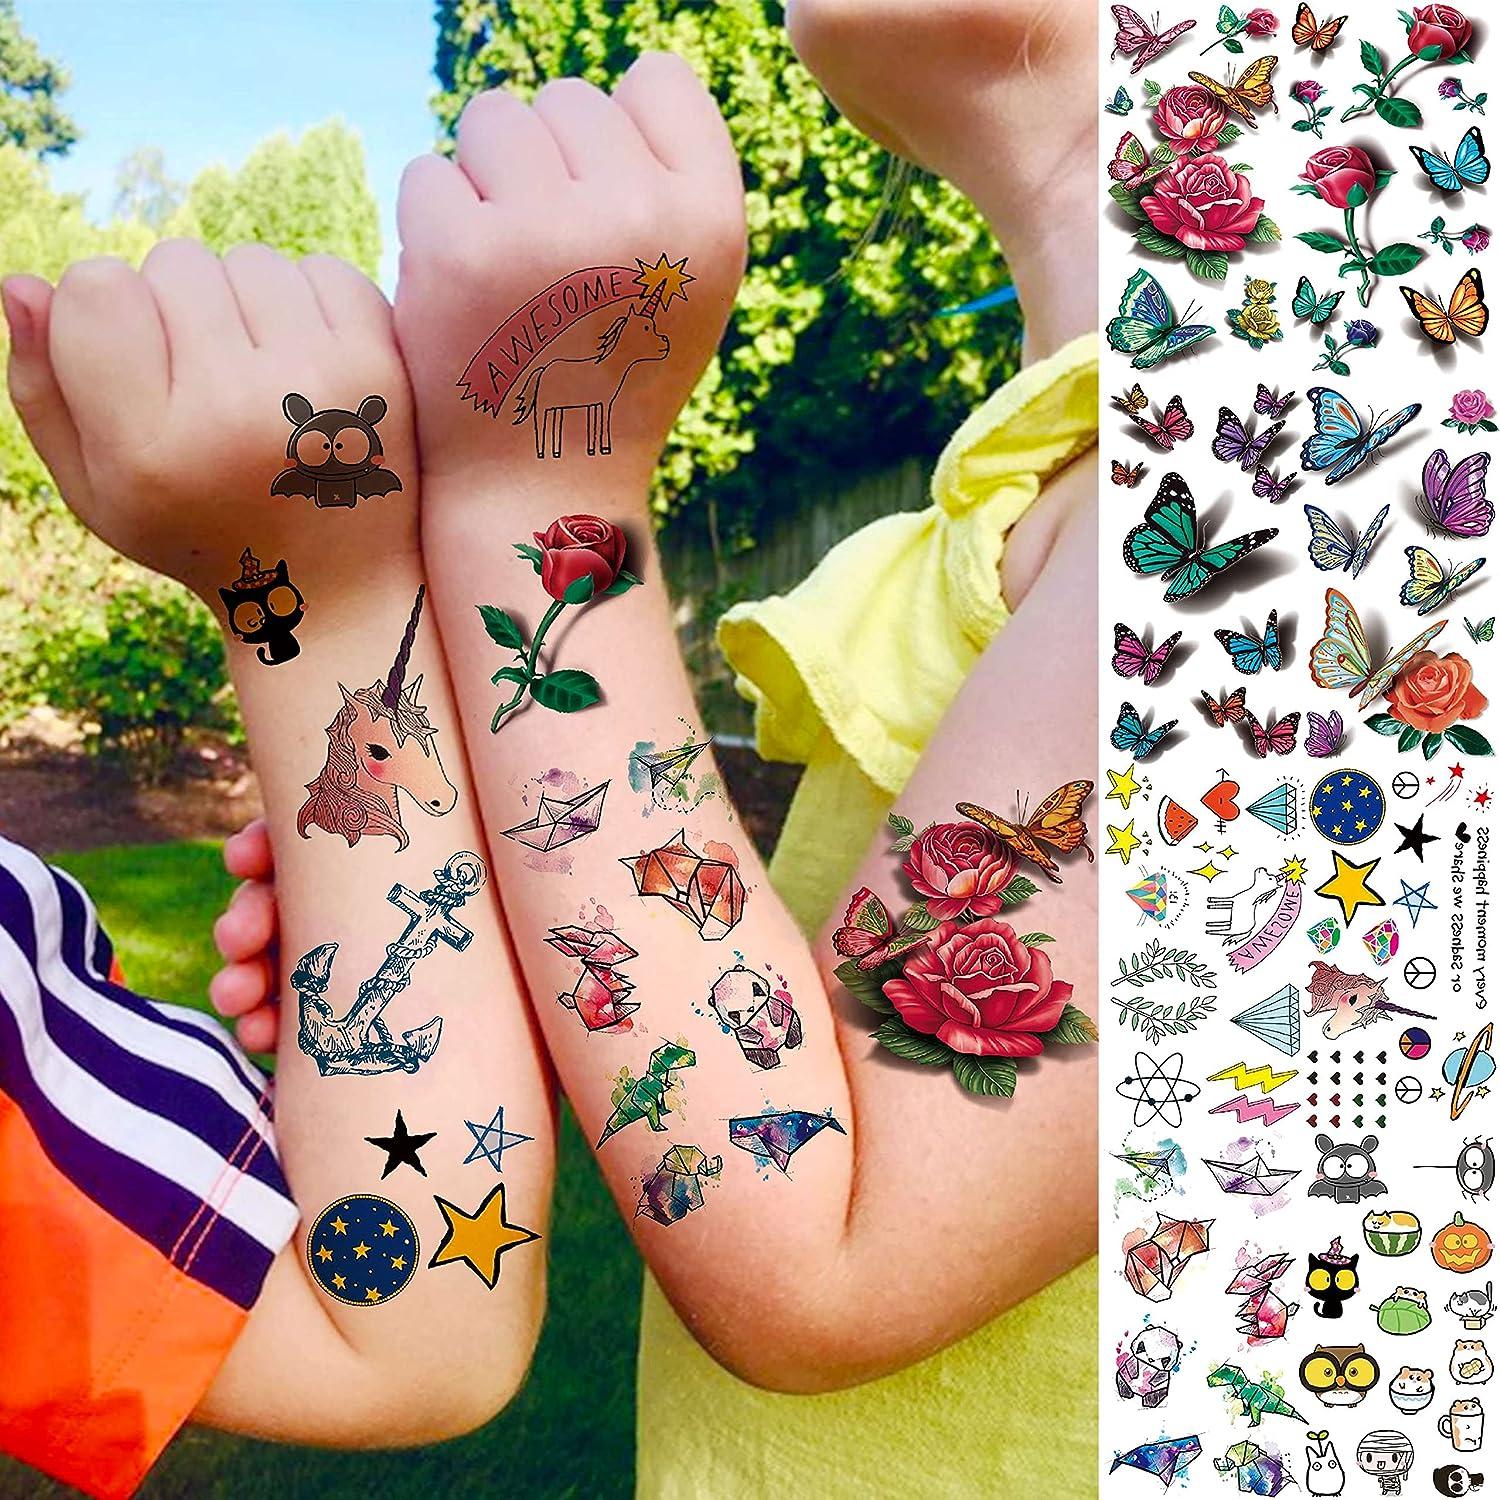 Star Tattoo | Temporary Tattoos - minink